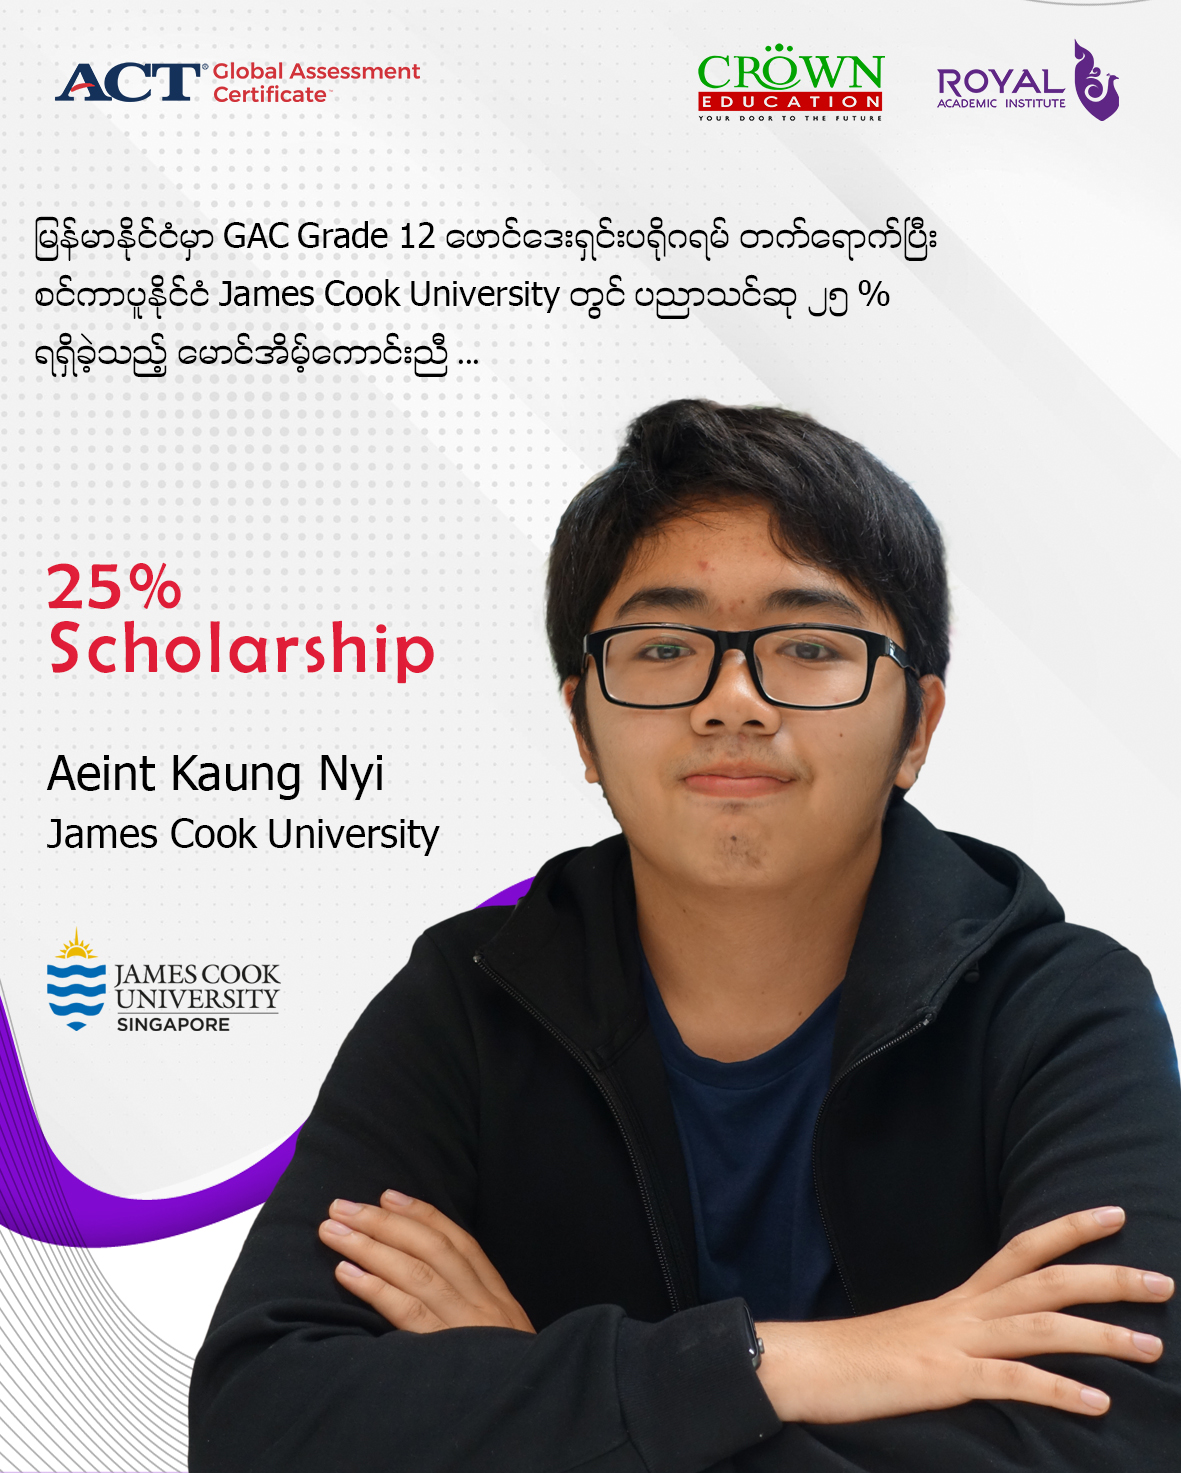 မြန်မာနိုင်ငံမှာ GAC Grade 12 ဖောင်ဒေးရှင်း ပရိုဂရမ် တက်ရောက်ပြီး စင်ကာပူနိုင်ငံ James Cook University တွင်ပညာသင်ဆု ၂၅% ရရှိခဲ့သည့် မောင်အိမ့်ကောင်းညီ